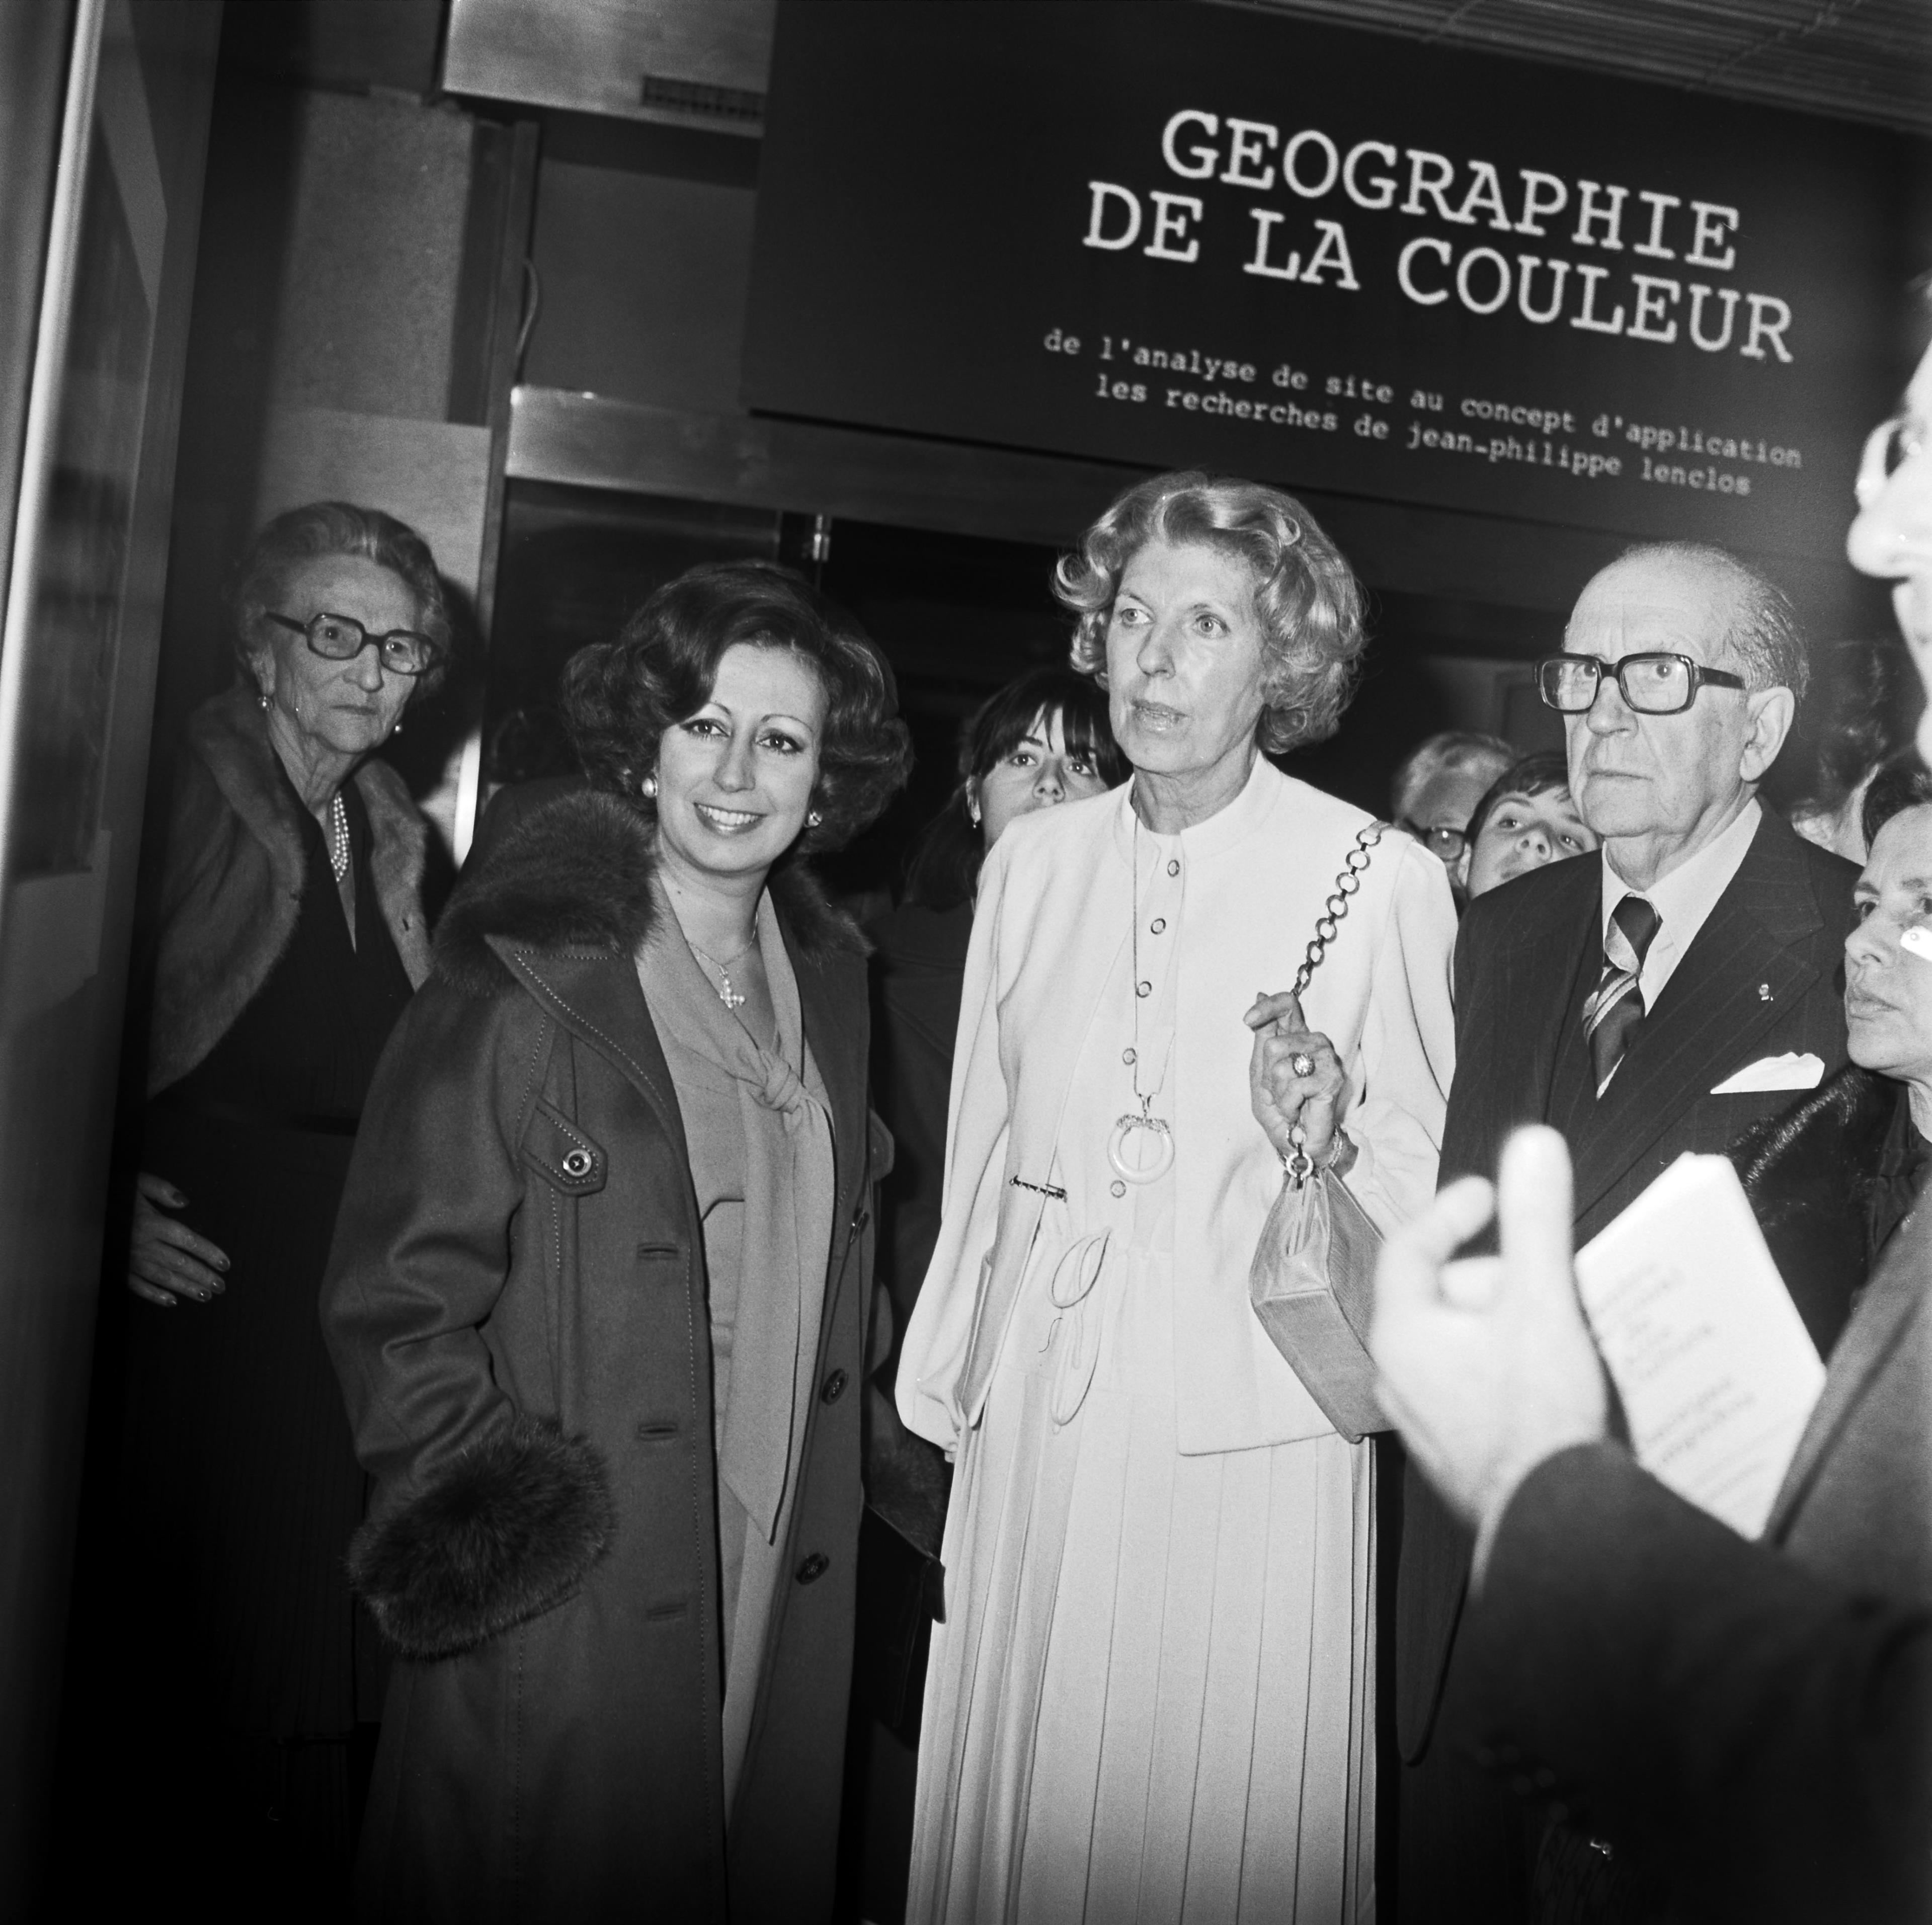 Visita oficial. Manuela Eanes (à esq.), Claude Jacqueline Pompidou (ao centro) e José de Azeredo Perdigão (à dir.)